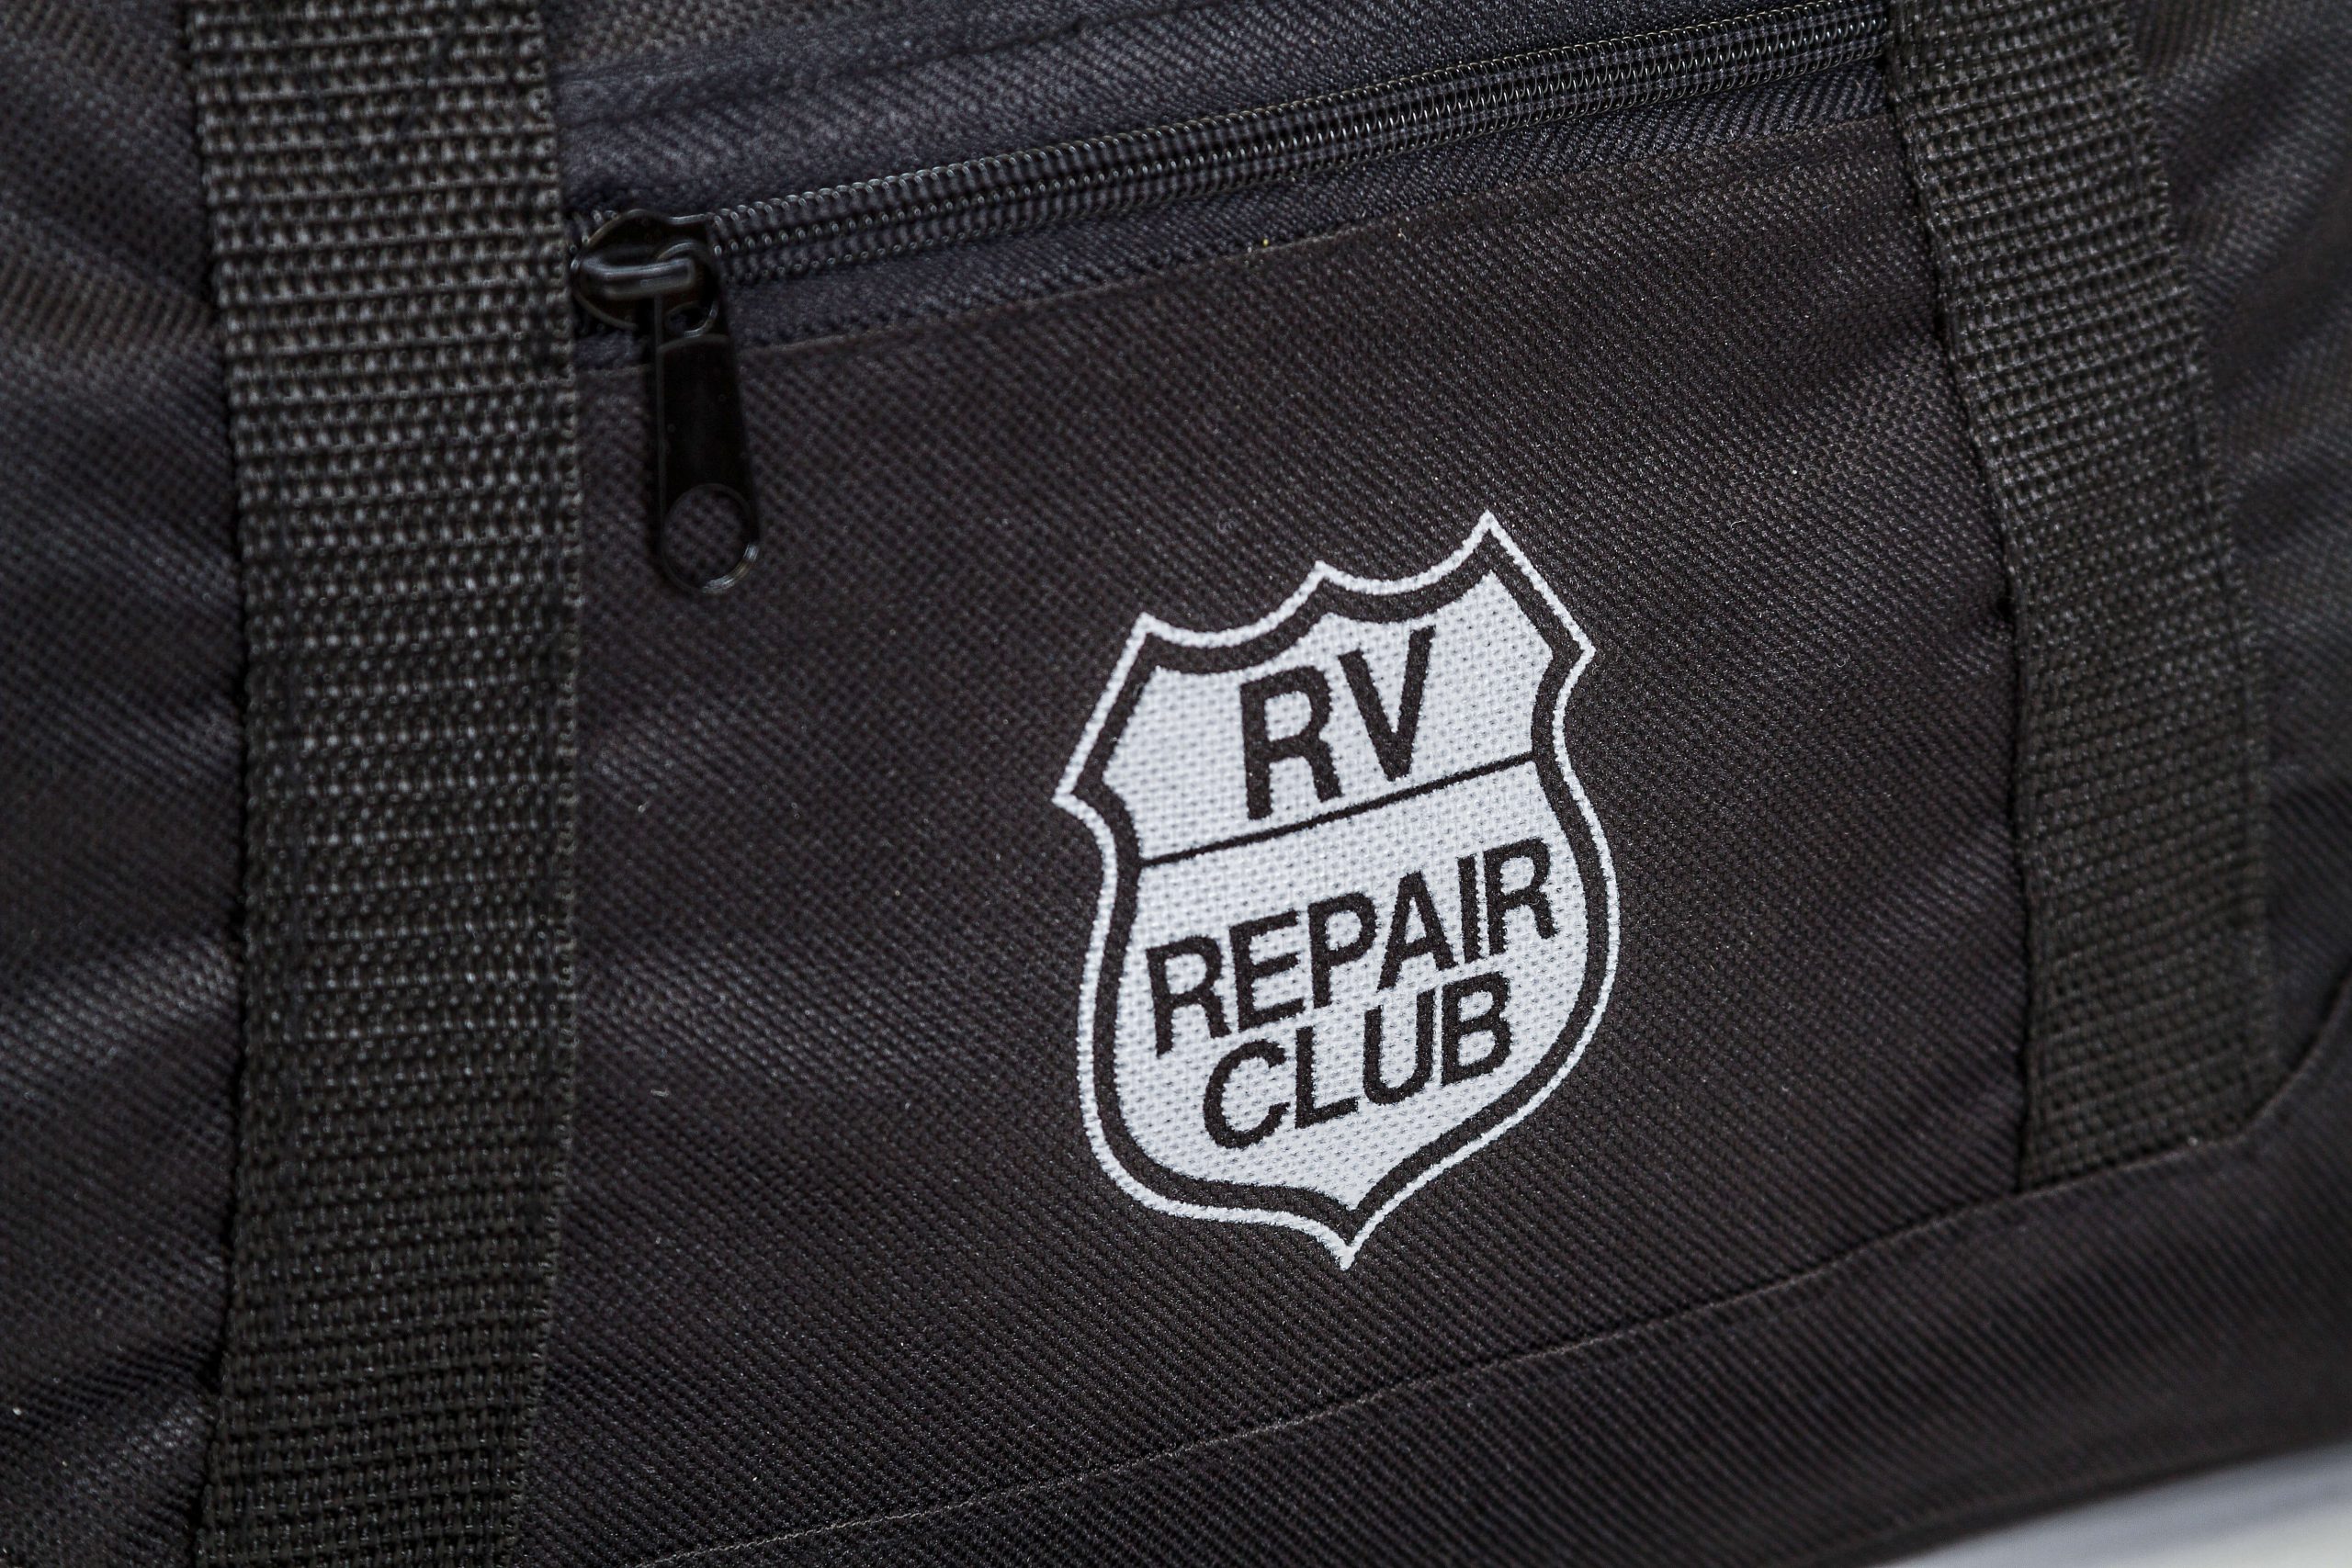 RV Repair Club logo on a duffle bag